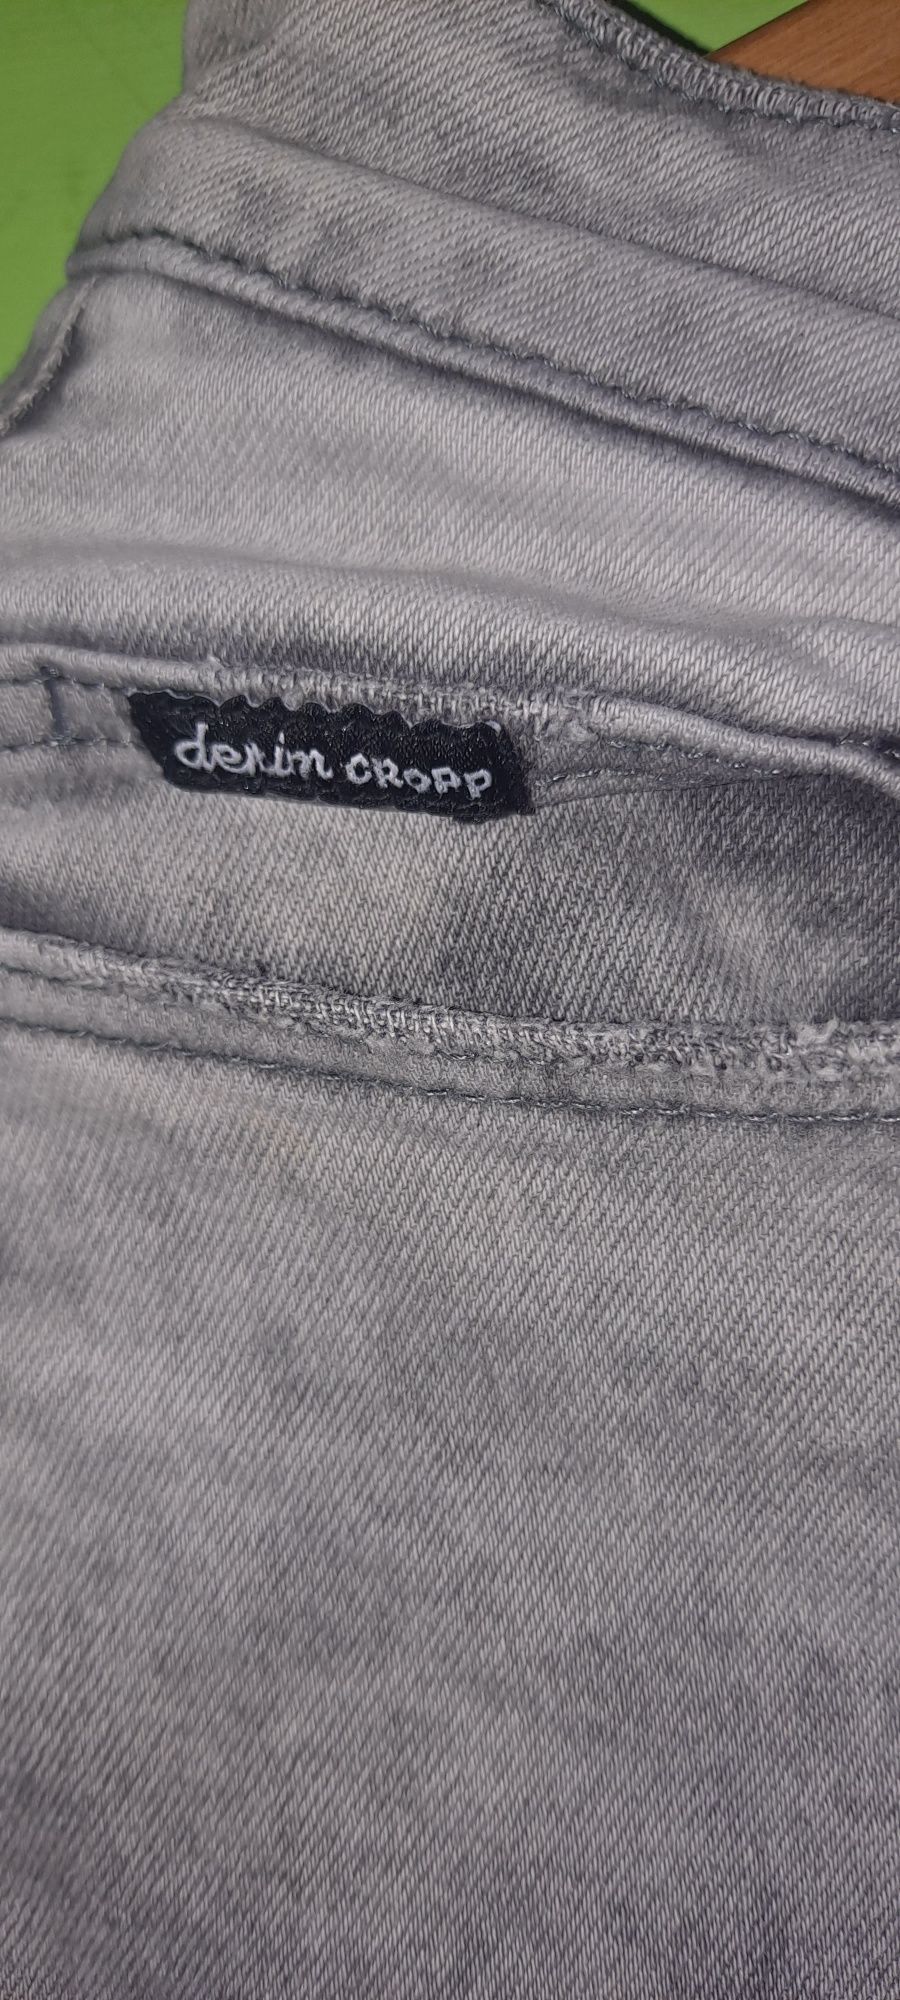 CROPP DENIM / spodnie jeans